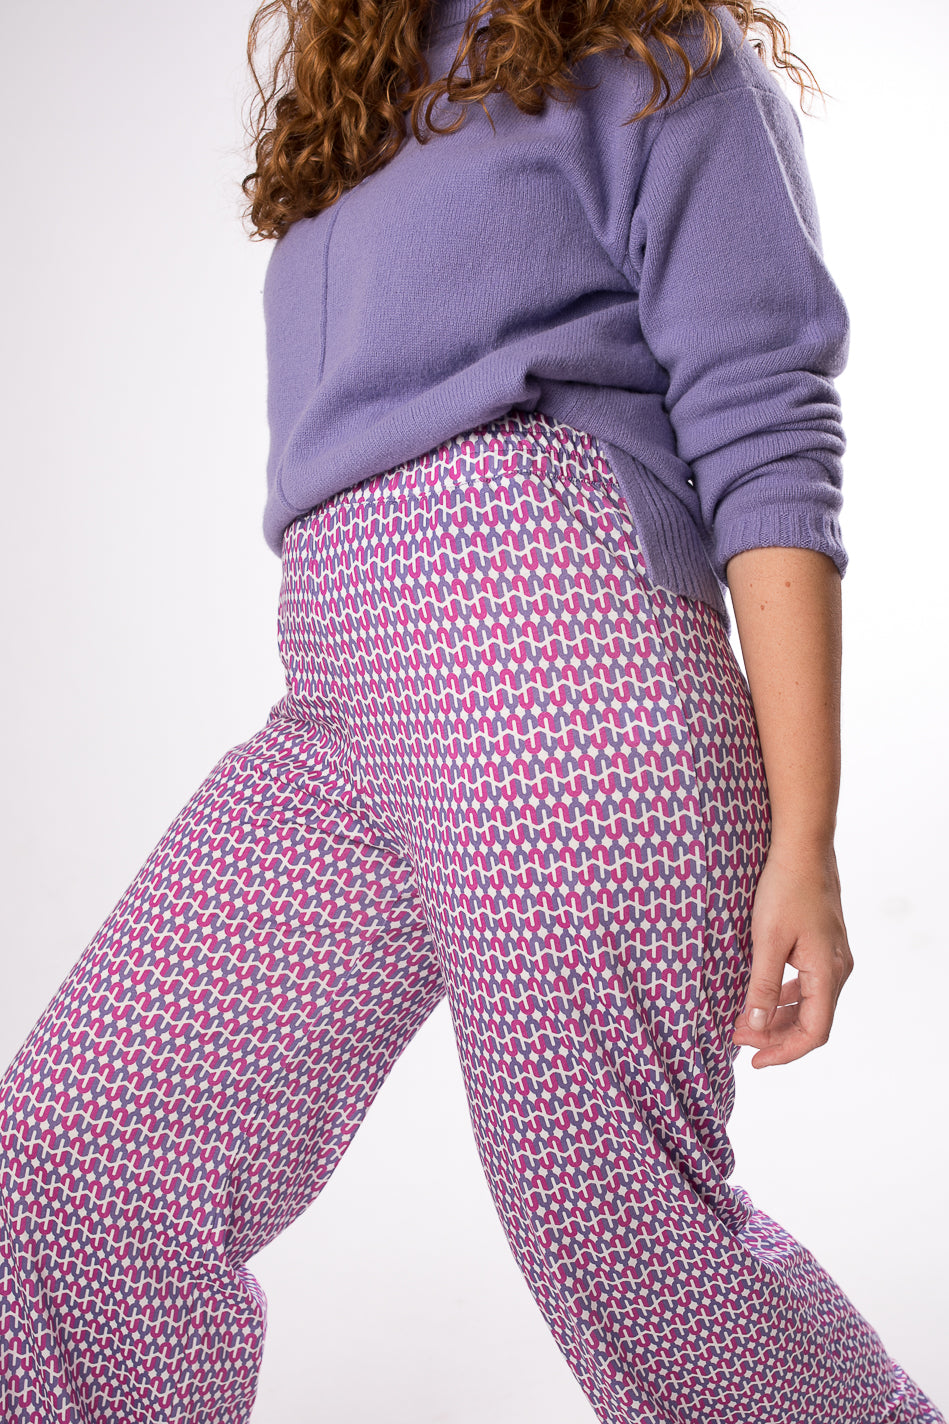 Pantalón ancho unisex de algodón rosa y azul estampado